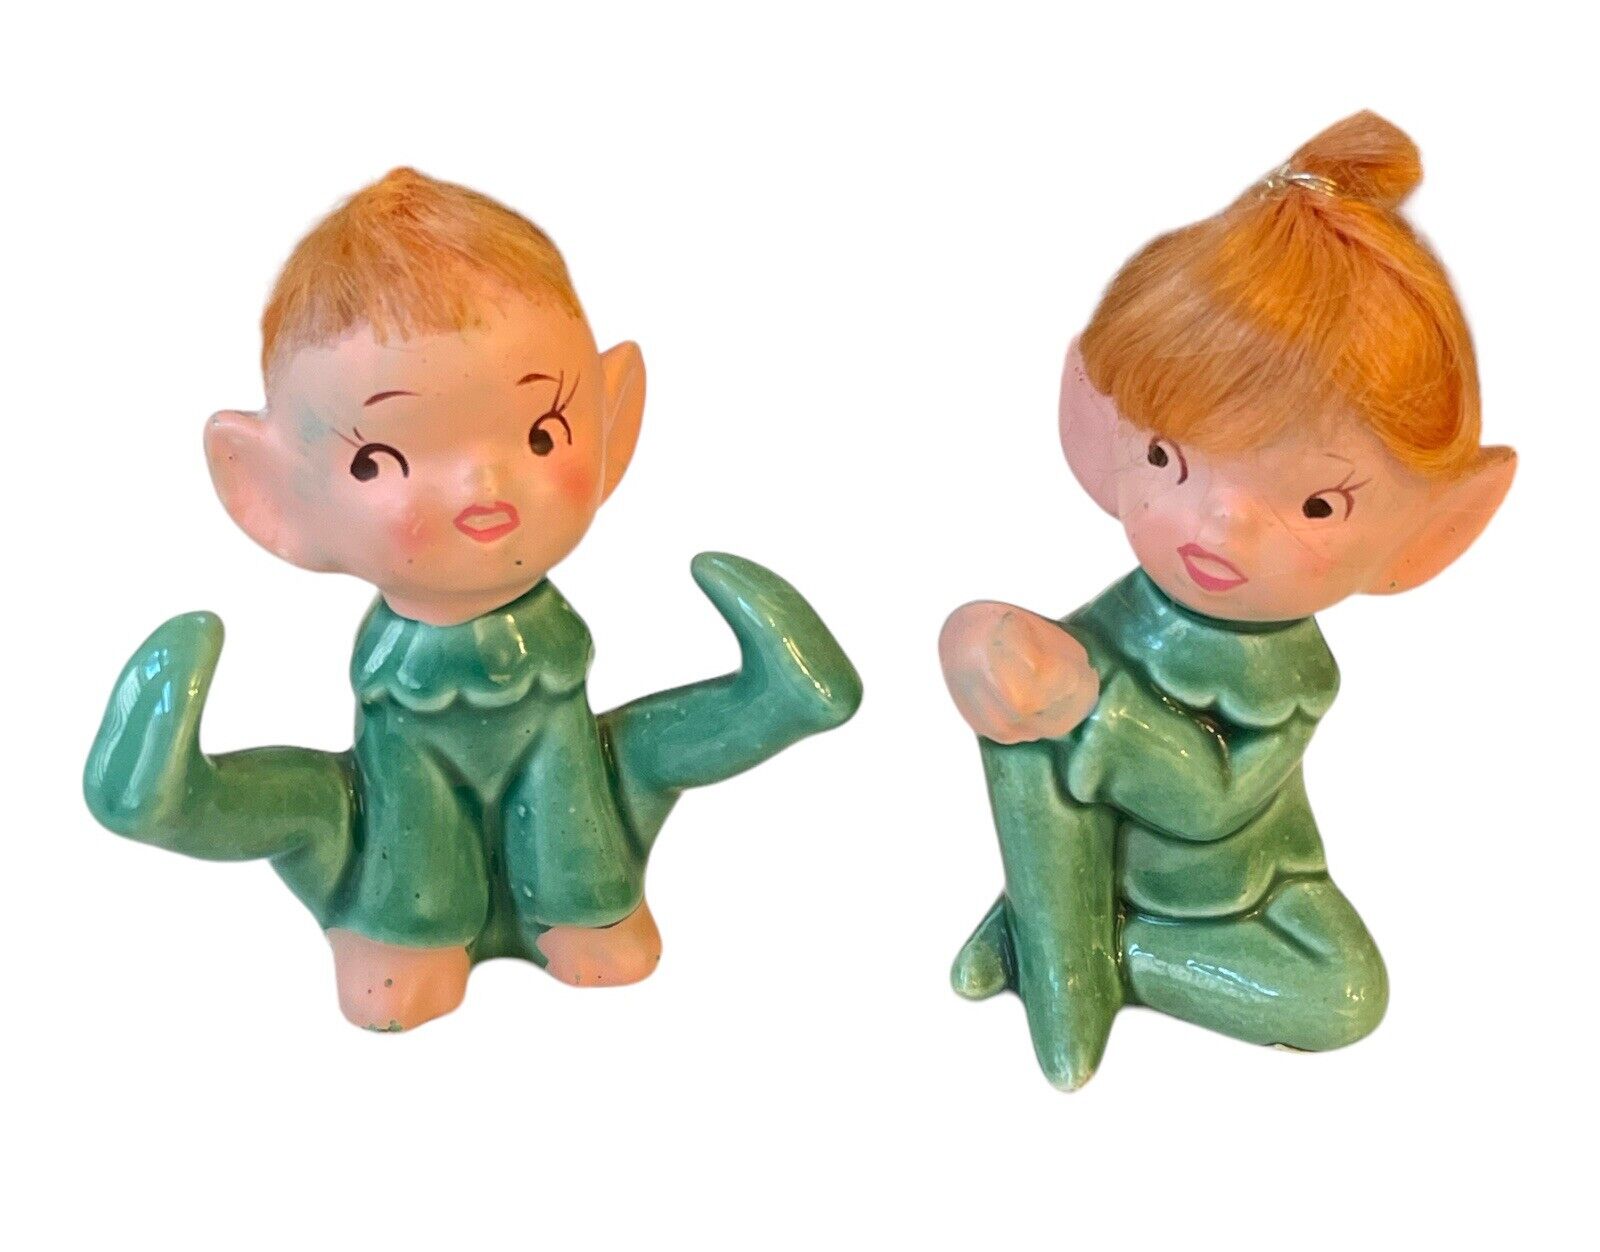 Vintage Elf Pixie Figurine Set Playful By Parma By AAI Japan Ginger Hair